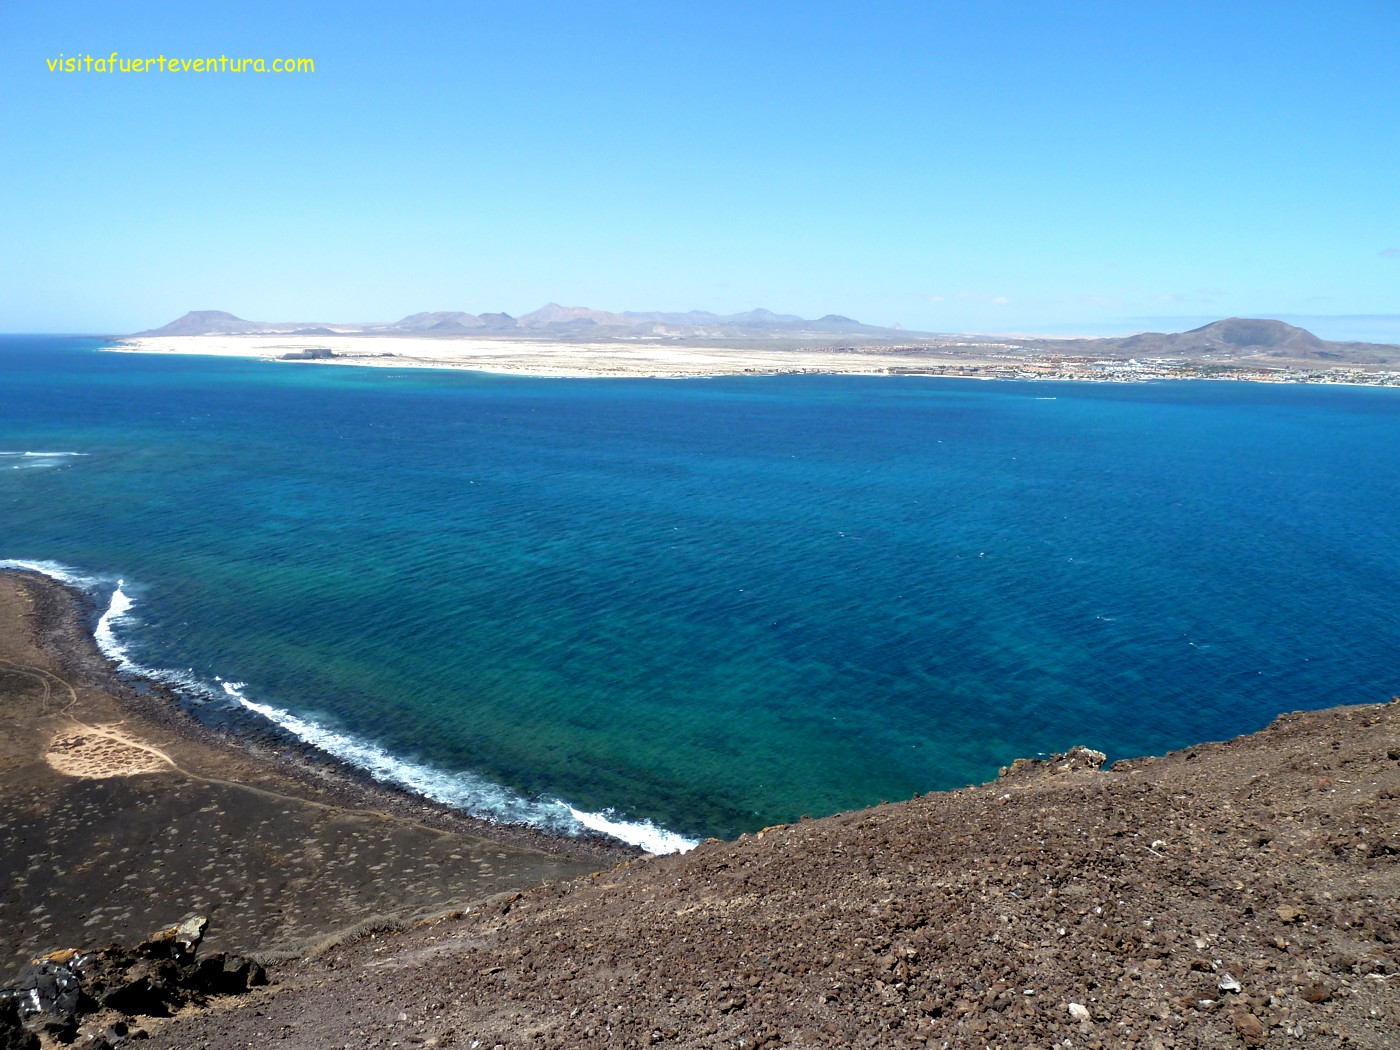 La Caldera, Isla de Lobos, Fuerteventura.